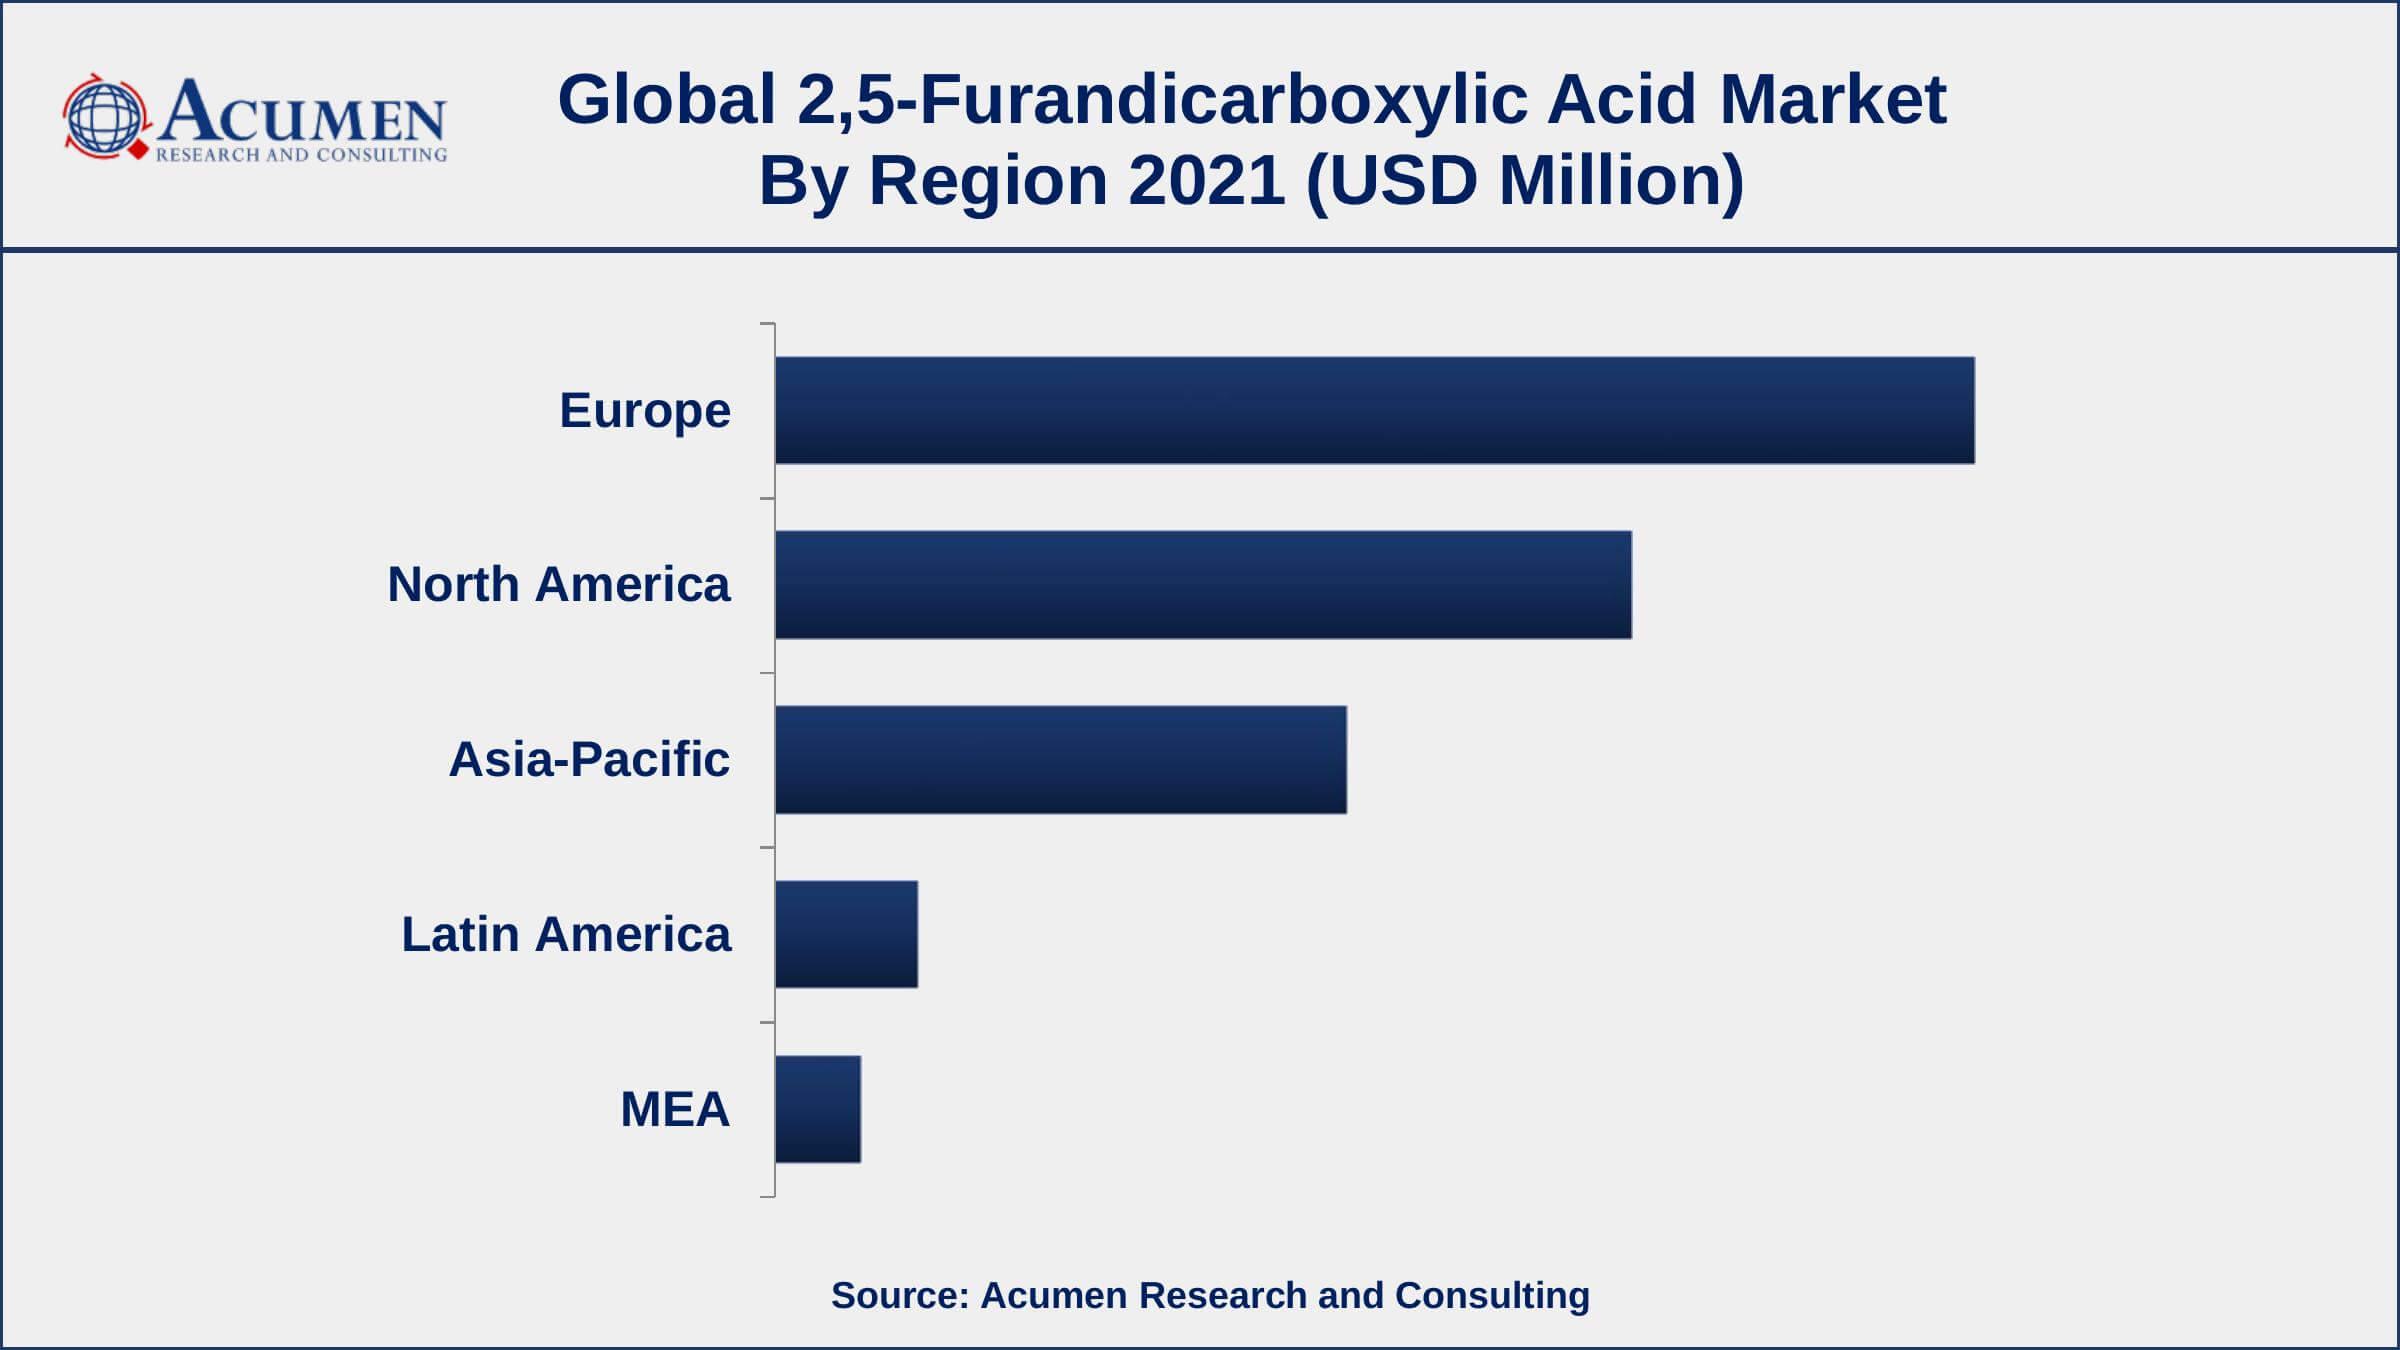 Europe Dominates The Global 2,5-Furandicarboxylic Acid Market